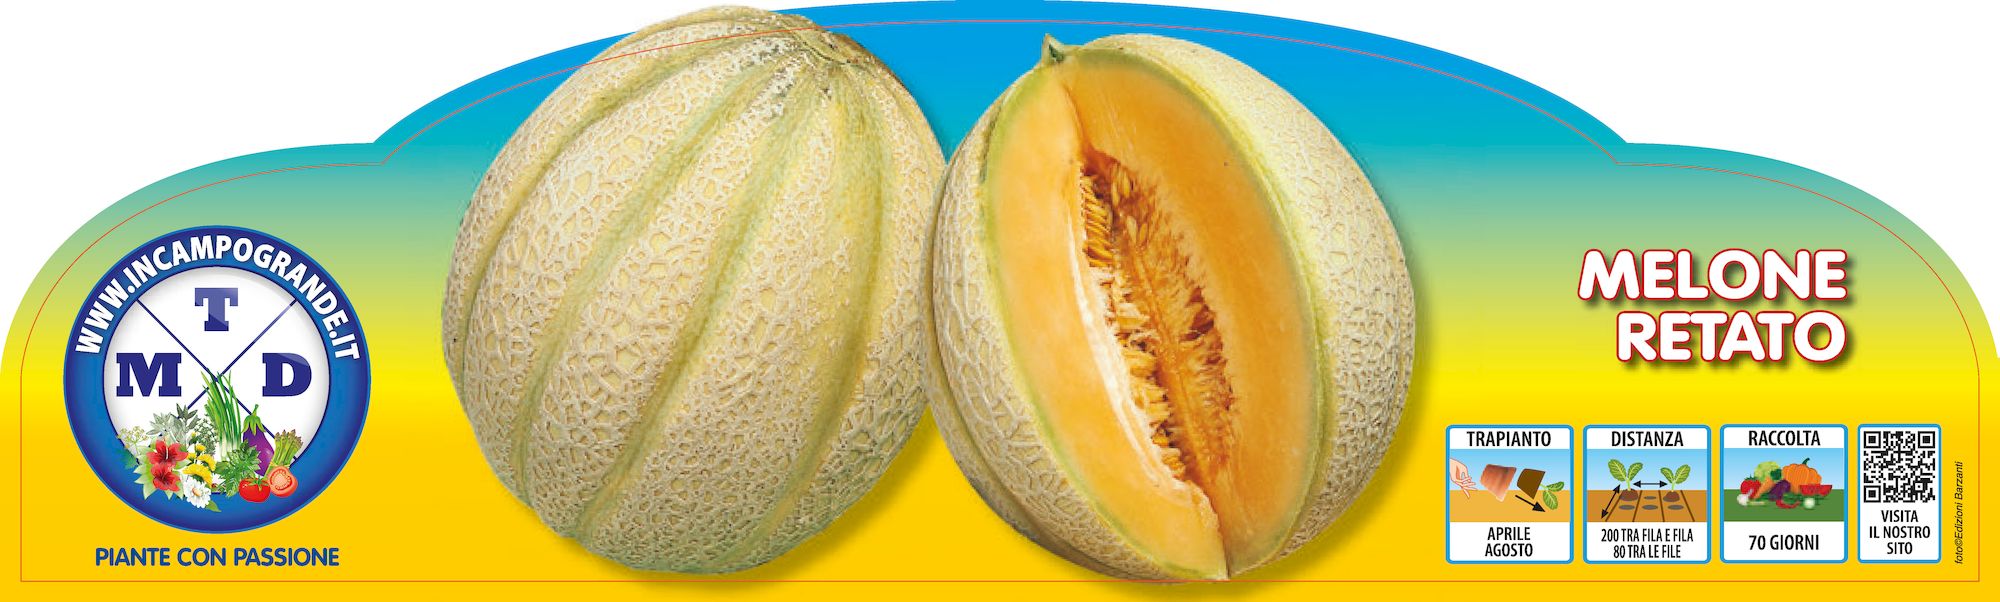 piante da orto primaverili - MELONE RETATO - Meloni prime plant